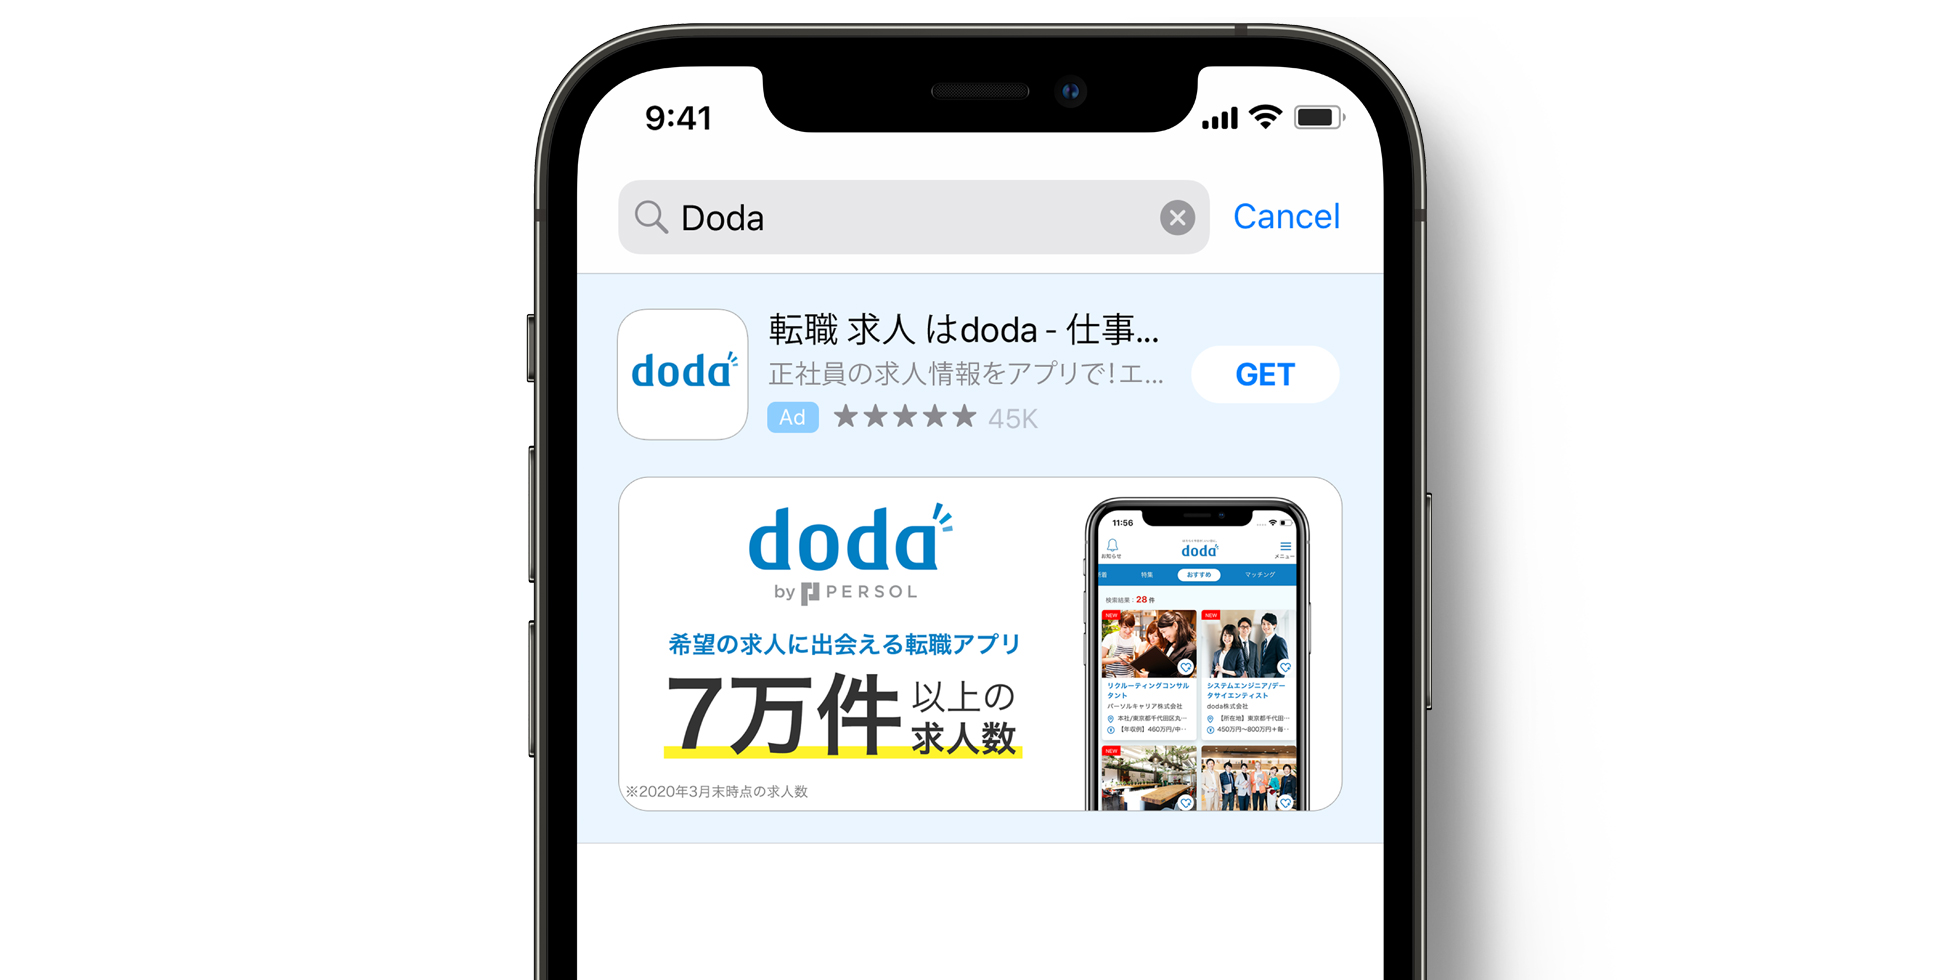 Anuncio de doda en el App Store